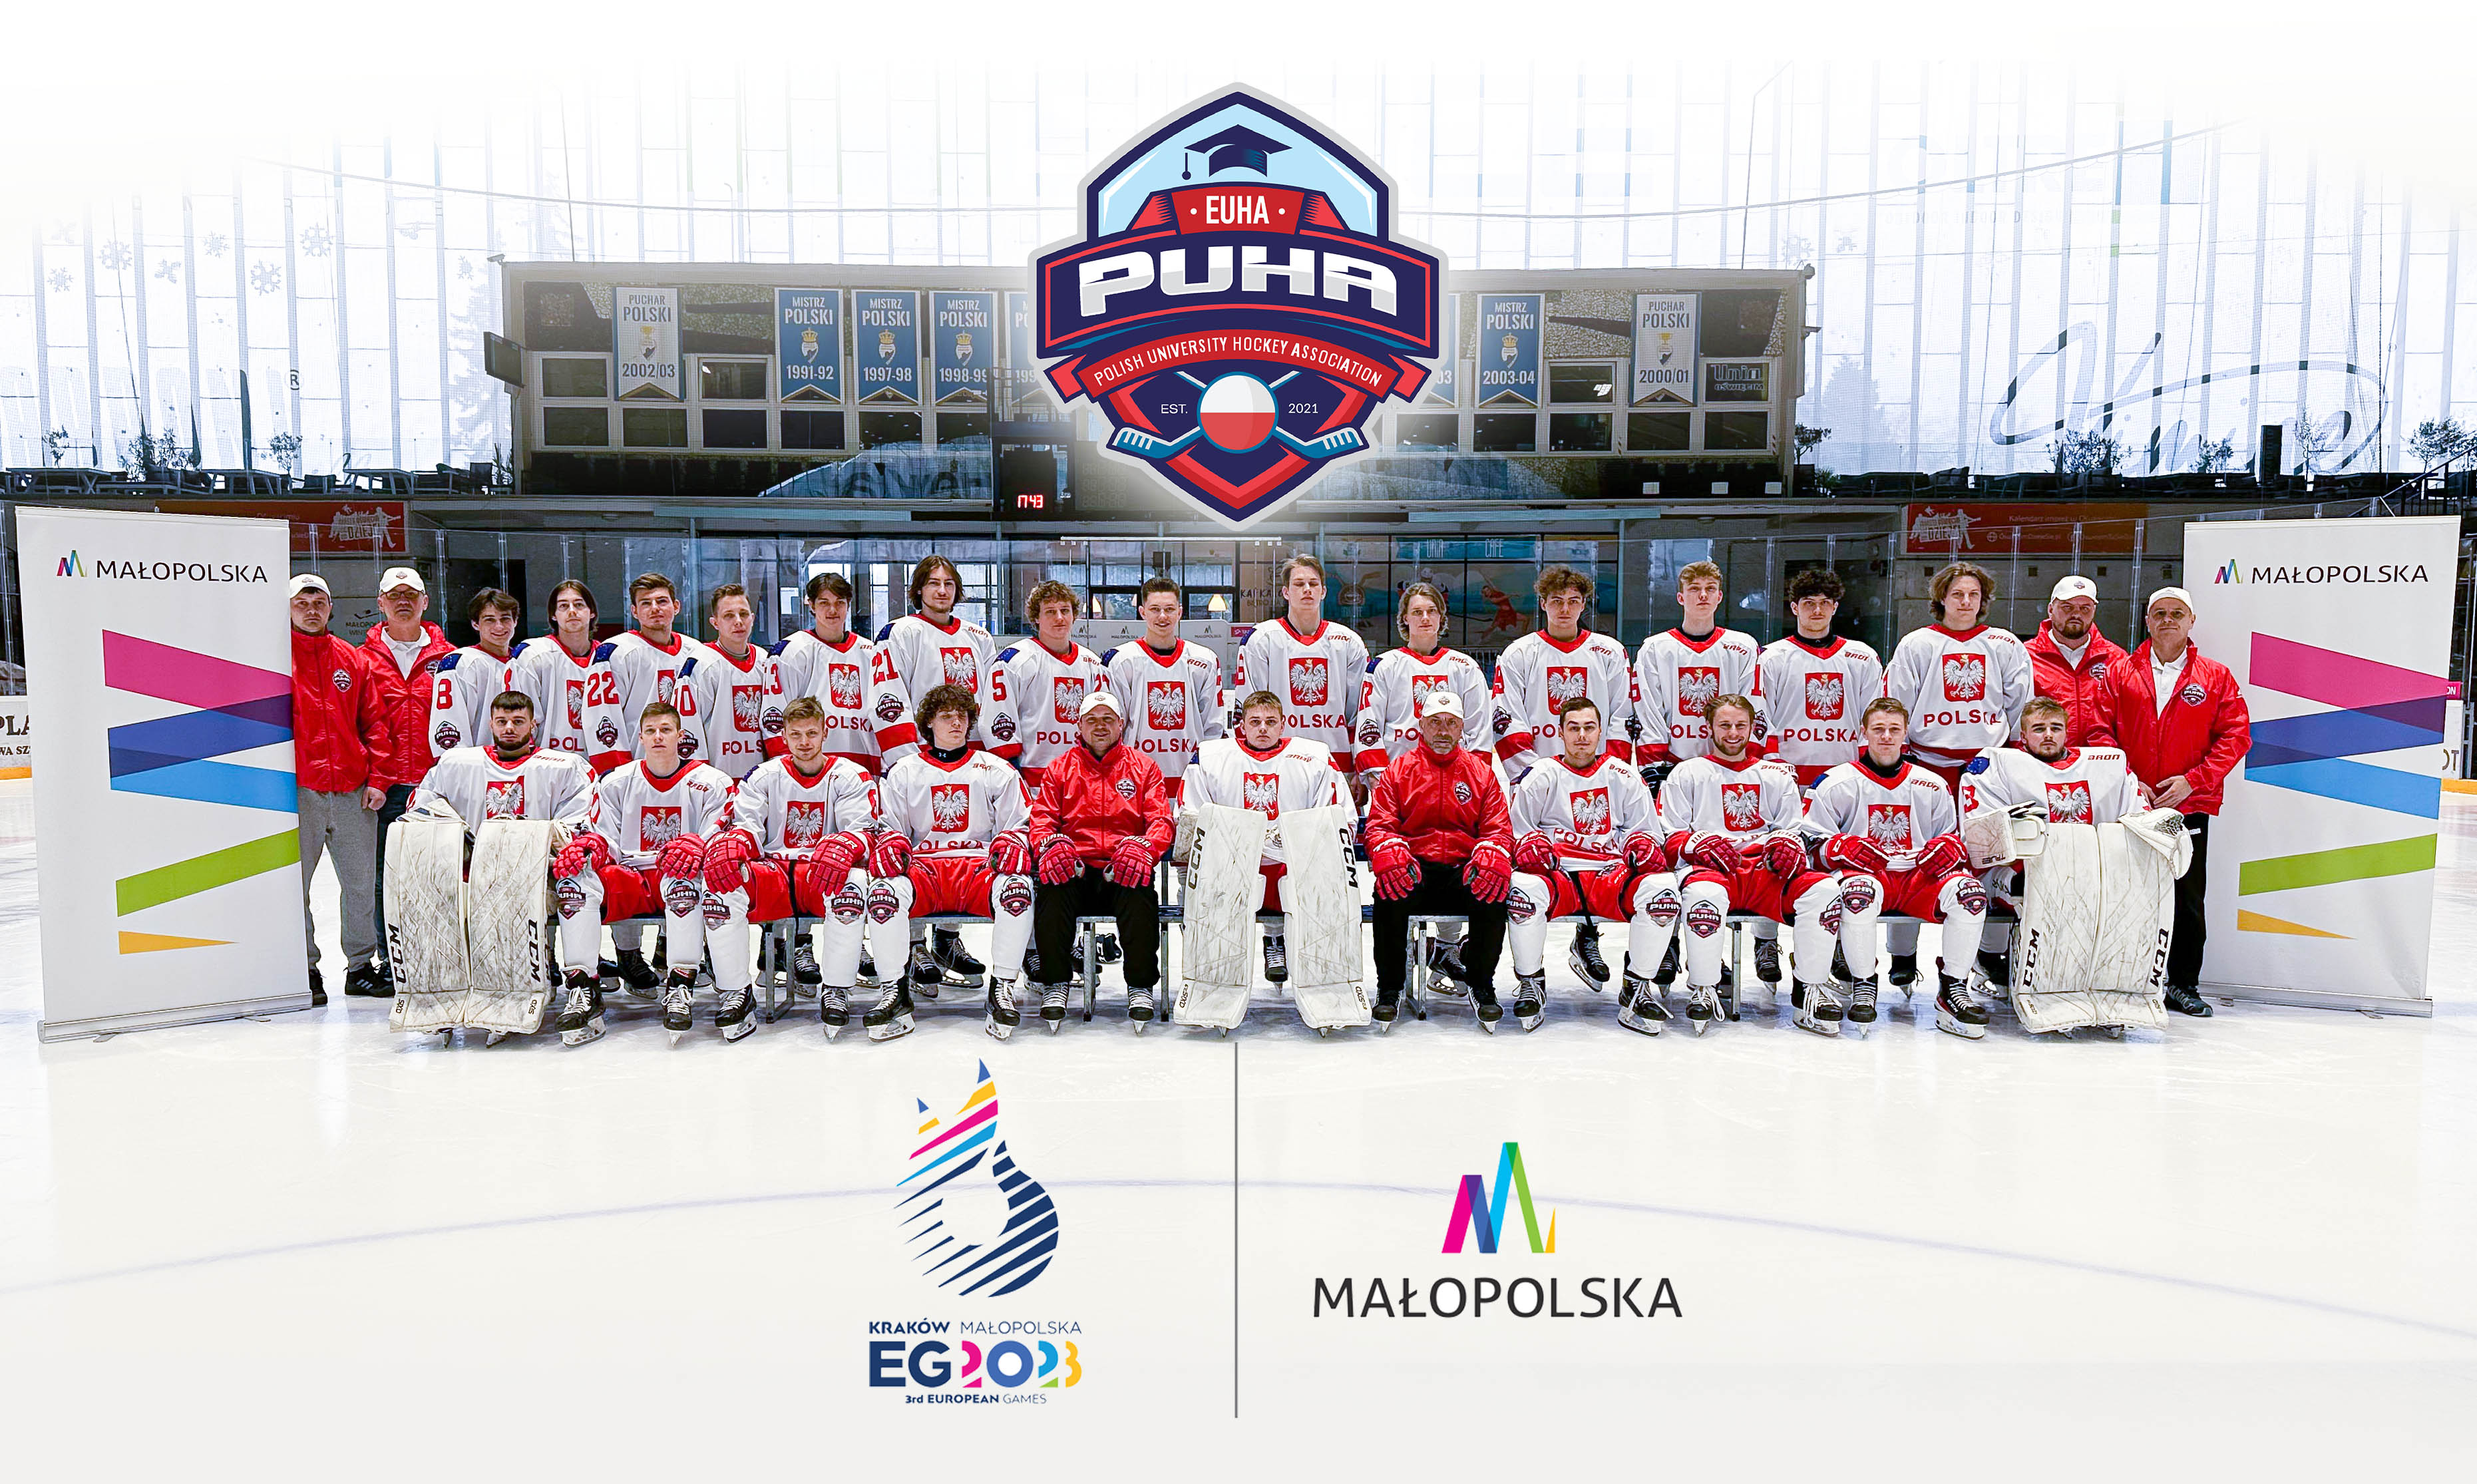 Na zdjęciu uniwersytecka reprezentacja Polski w hokeju na lodzie na pamiątkowym zdjęciu na oświęcimskim lodowisku